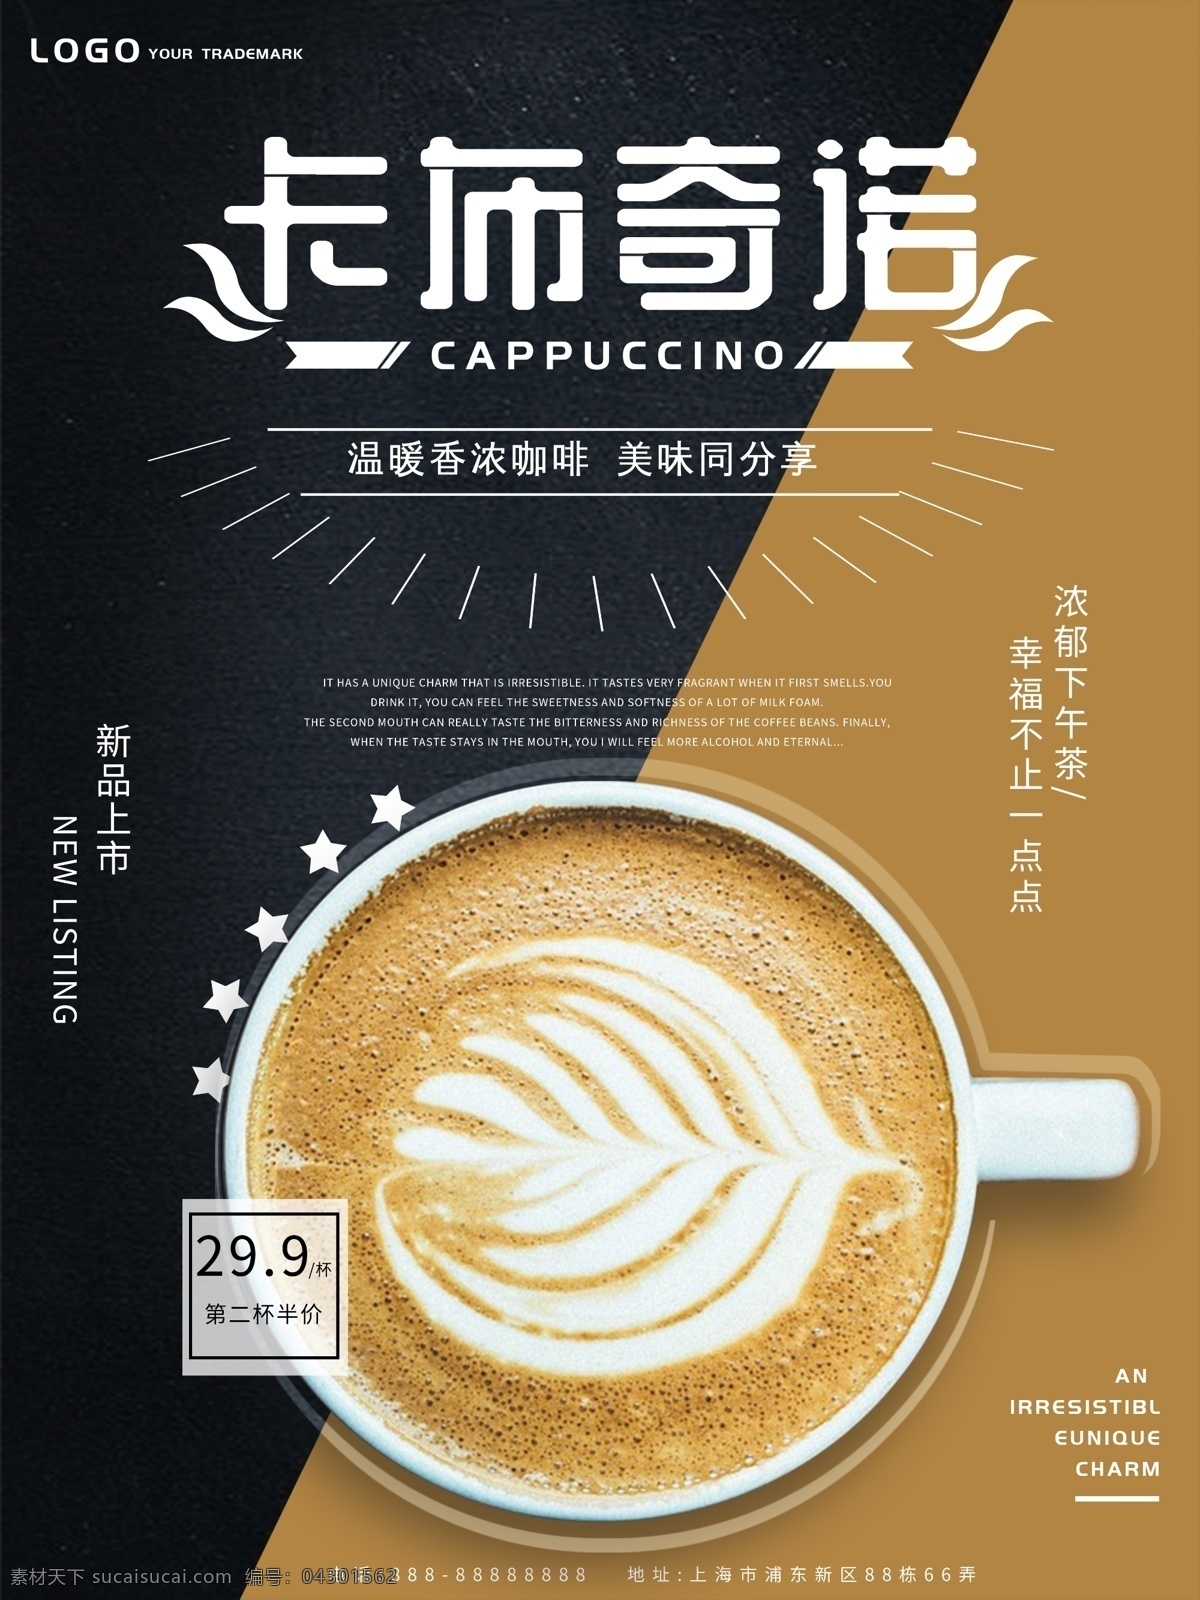 原创 简约 咖啡 热饮 海报 饮料 咖啡海报 优惠 新品上市 黑色 卡布奇诺 下午茶